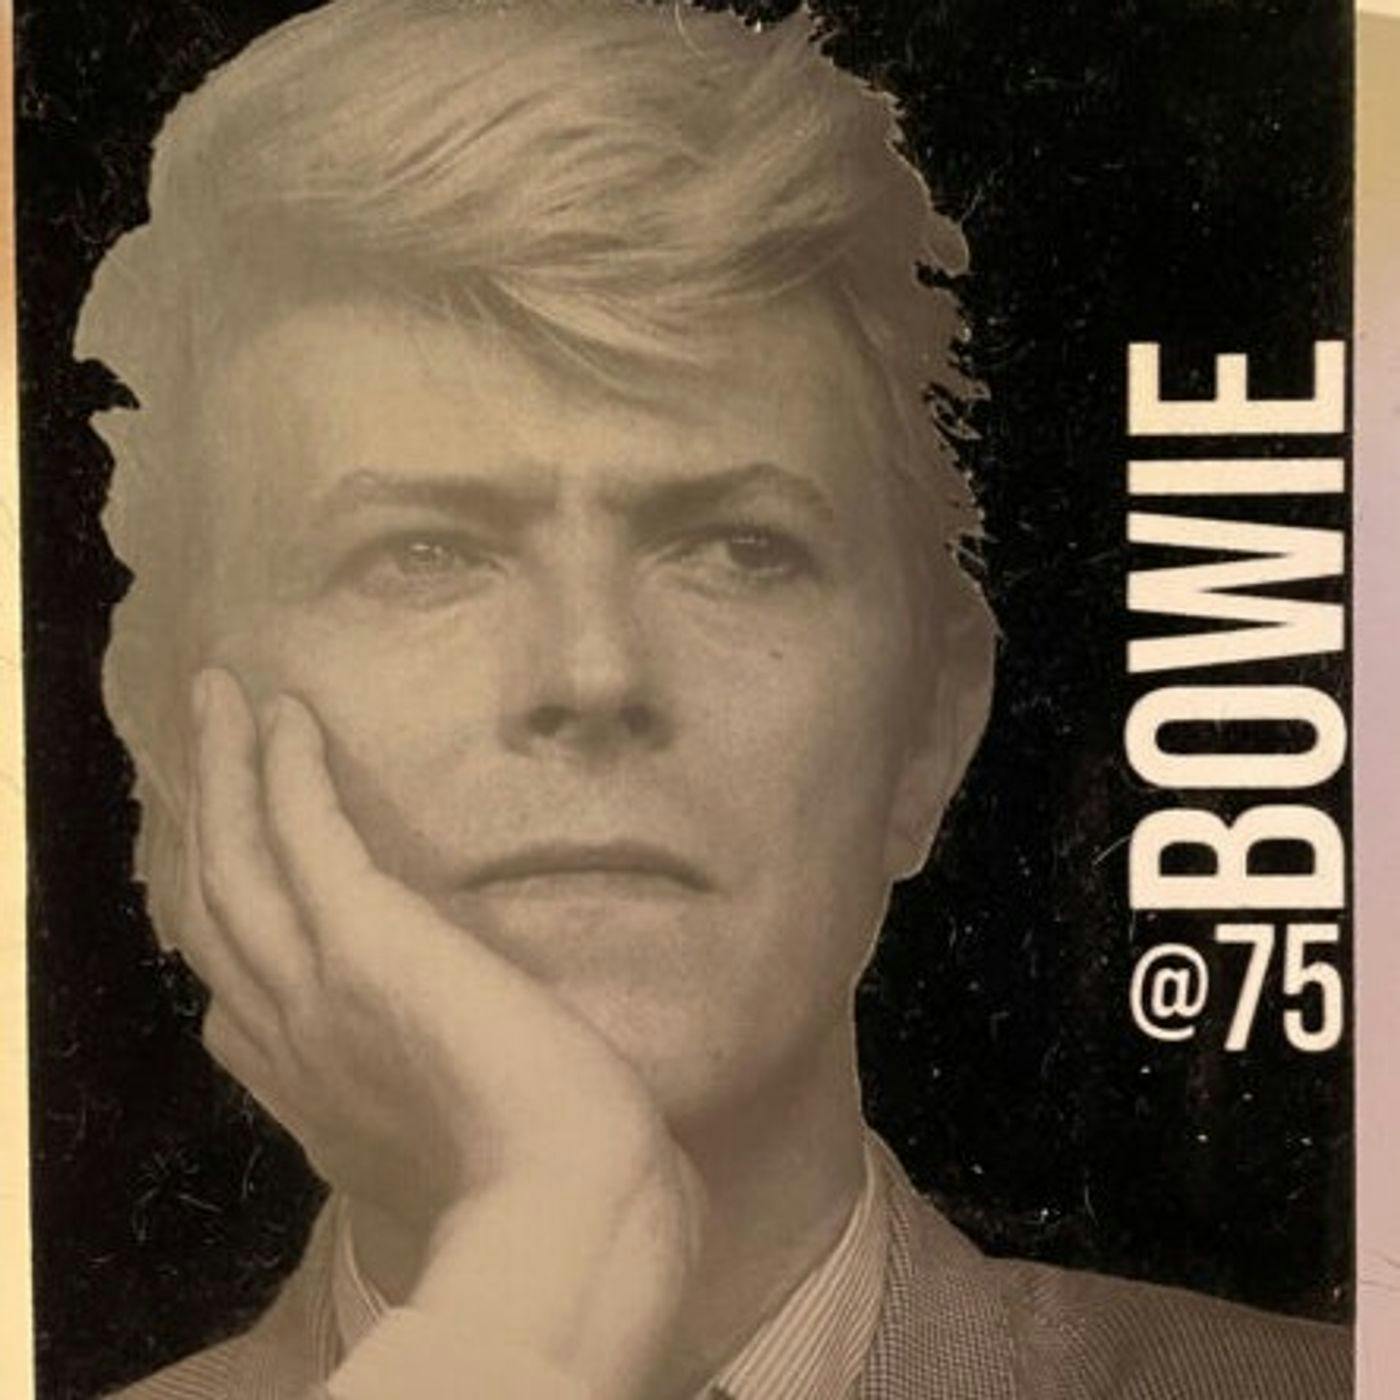 David Bowie at 75